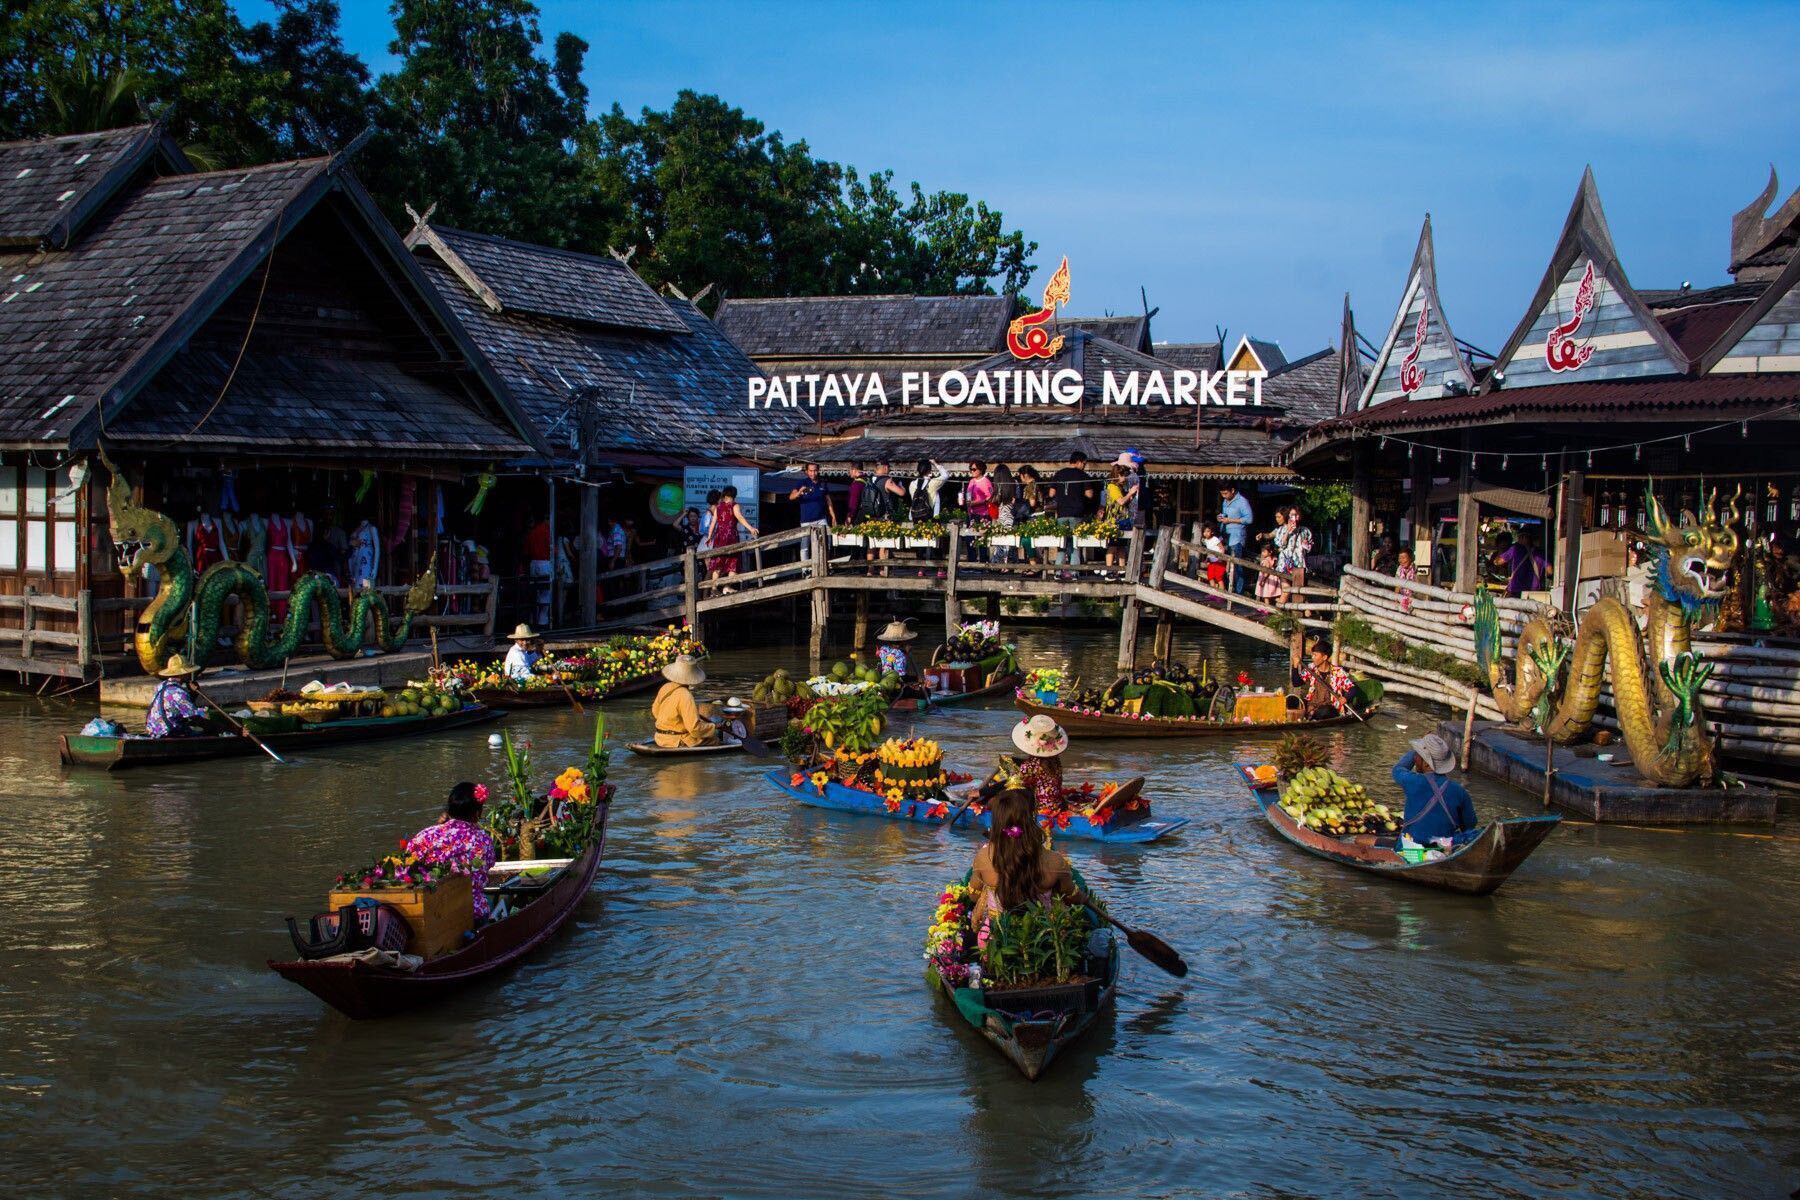 Chùm ảnh chợ nổi Pattaya - địa điểm du lịch nổi tiếng Thái Lan trước khi gặp hỏa hoạn kinh hoàng - Ảnh 2.